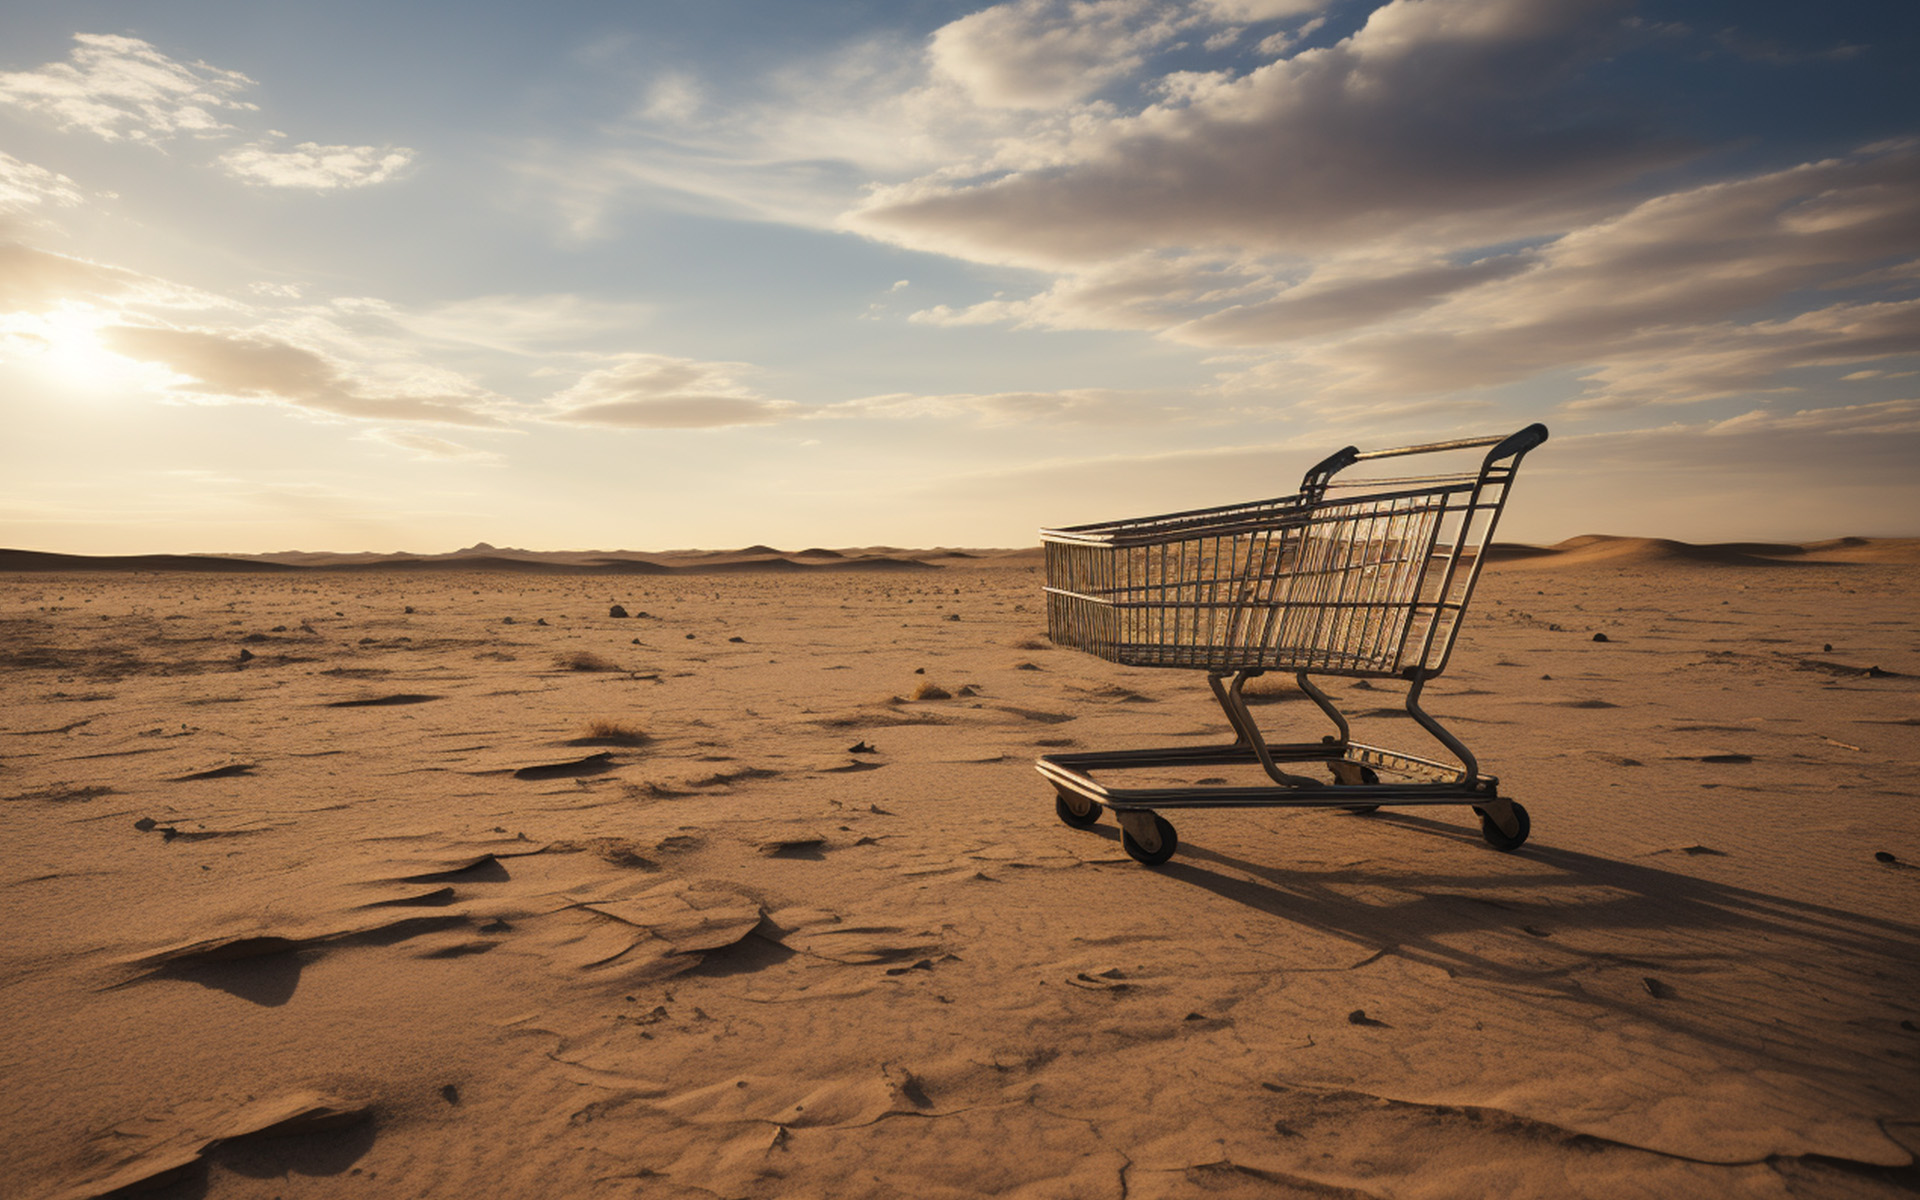 An abandoned cart in a desert